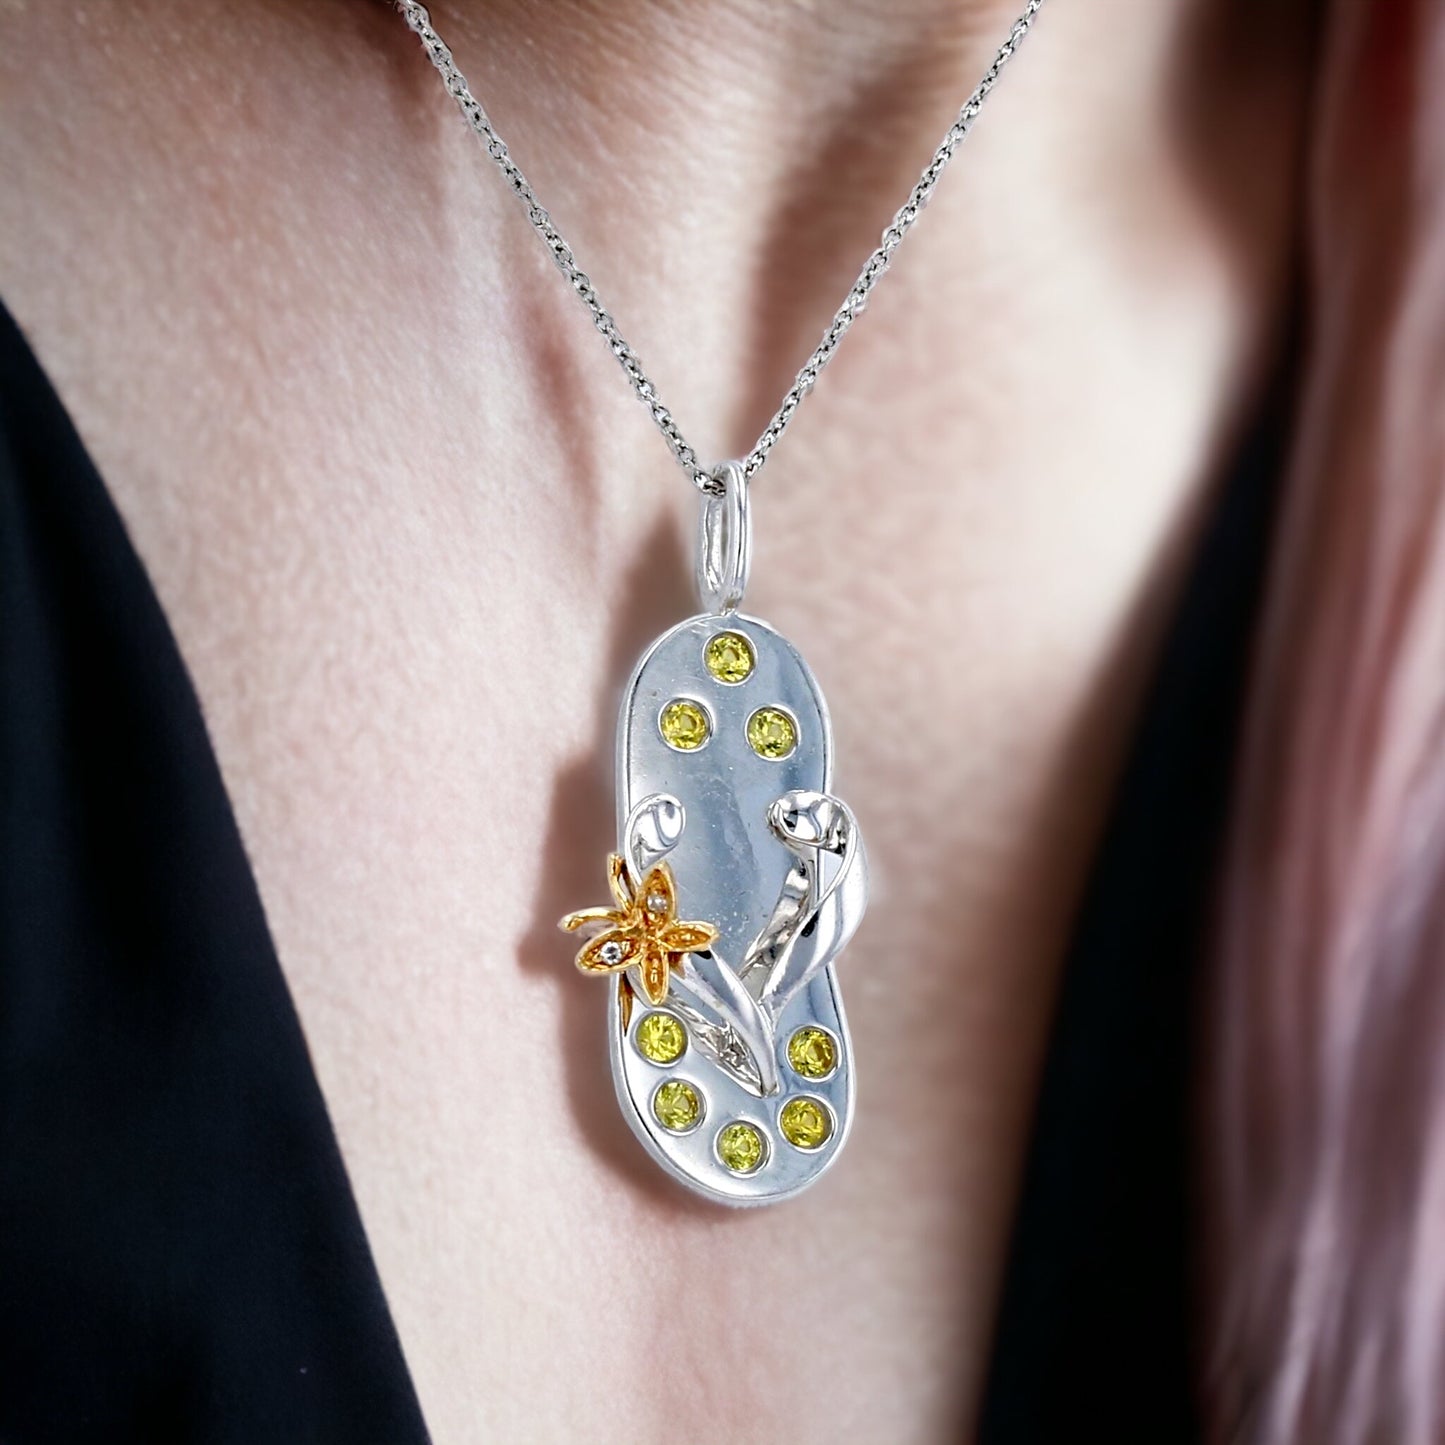 White gold 14k necklace flip-flop pendant